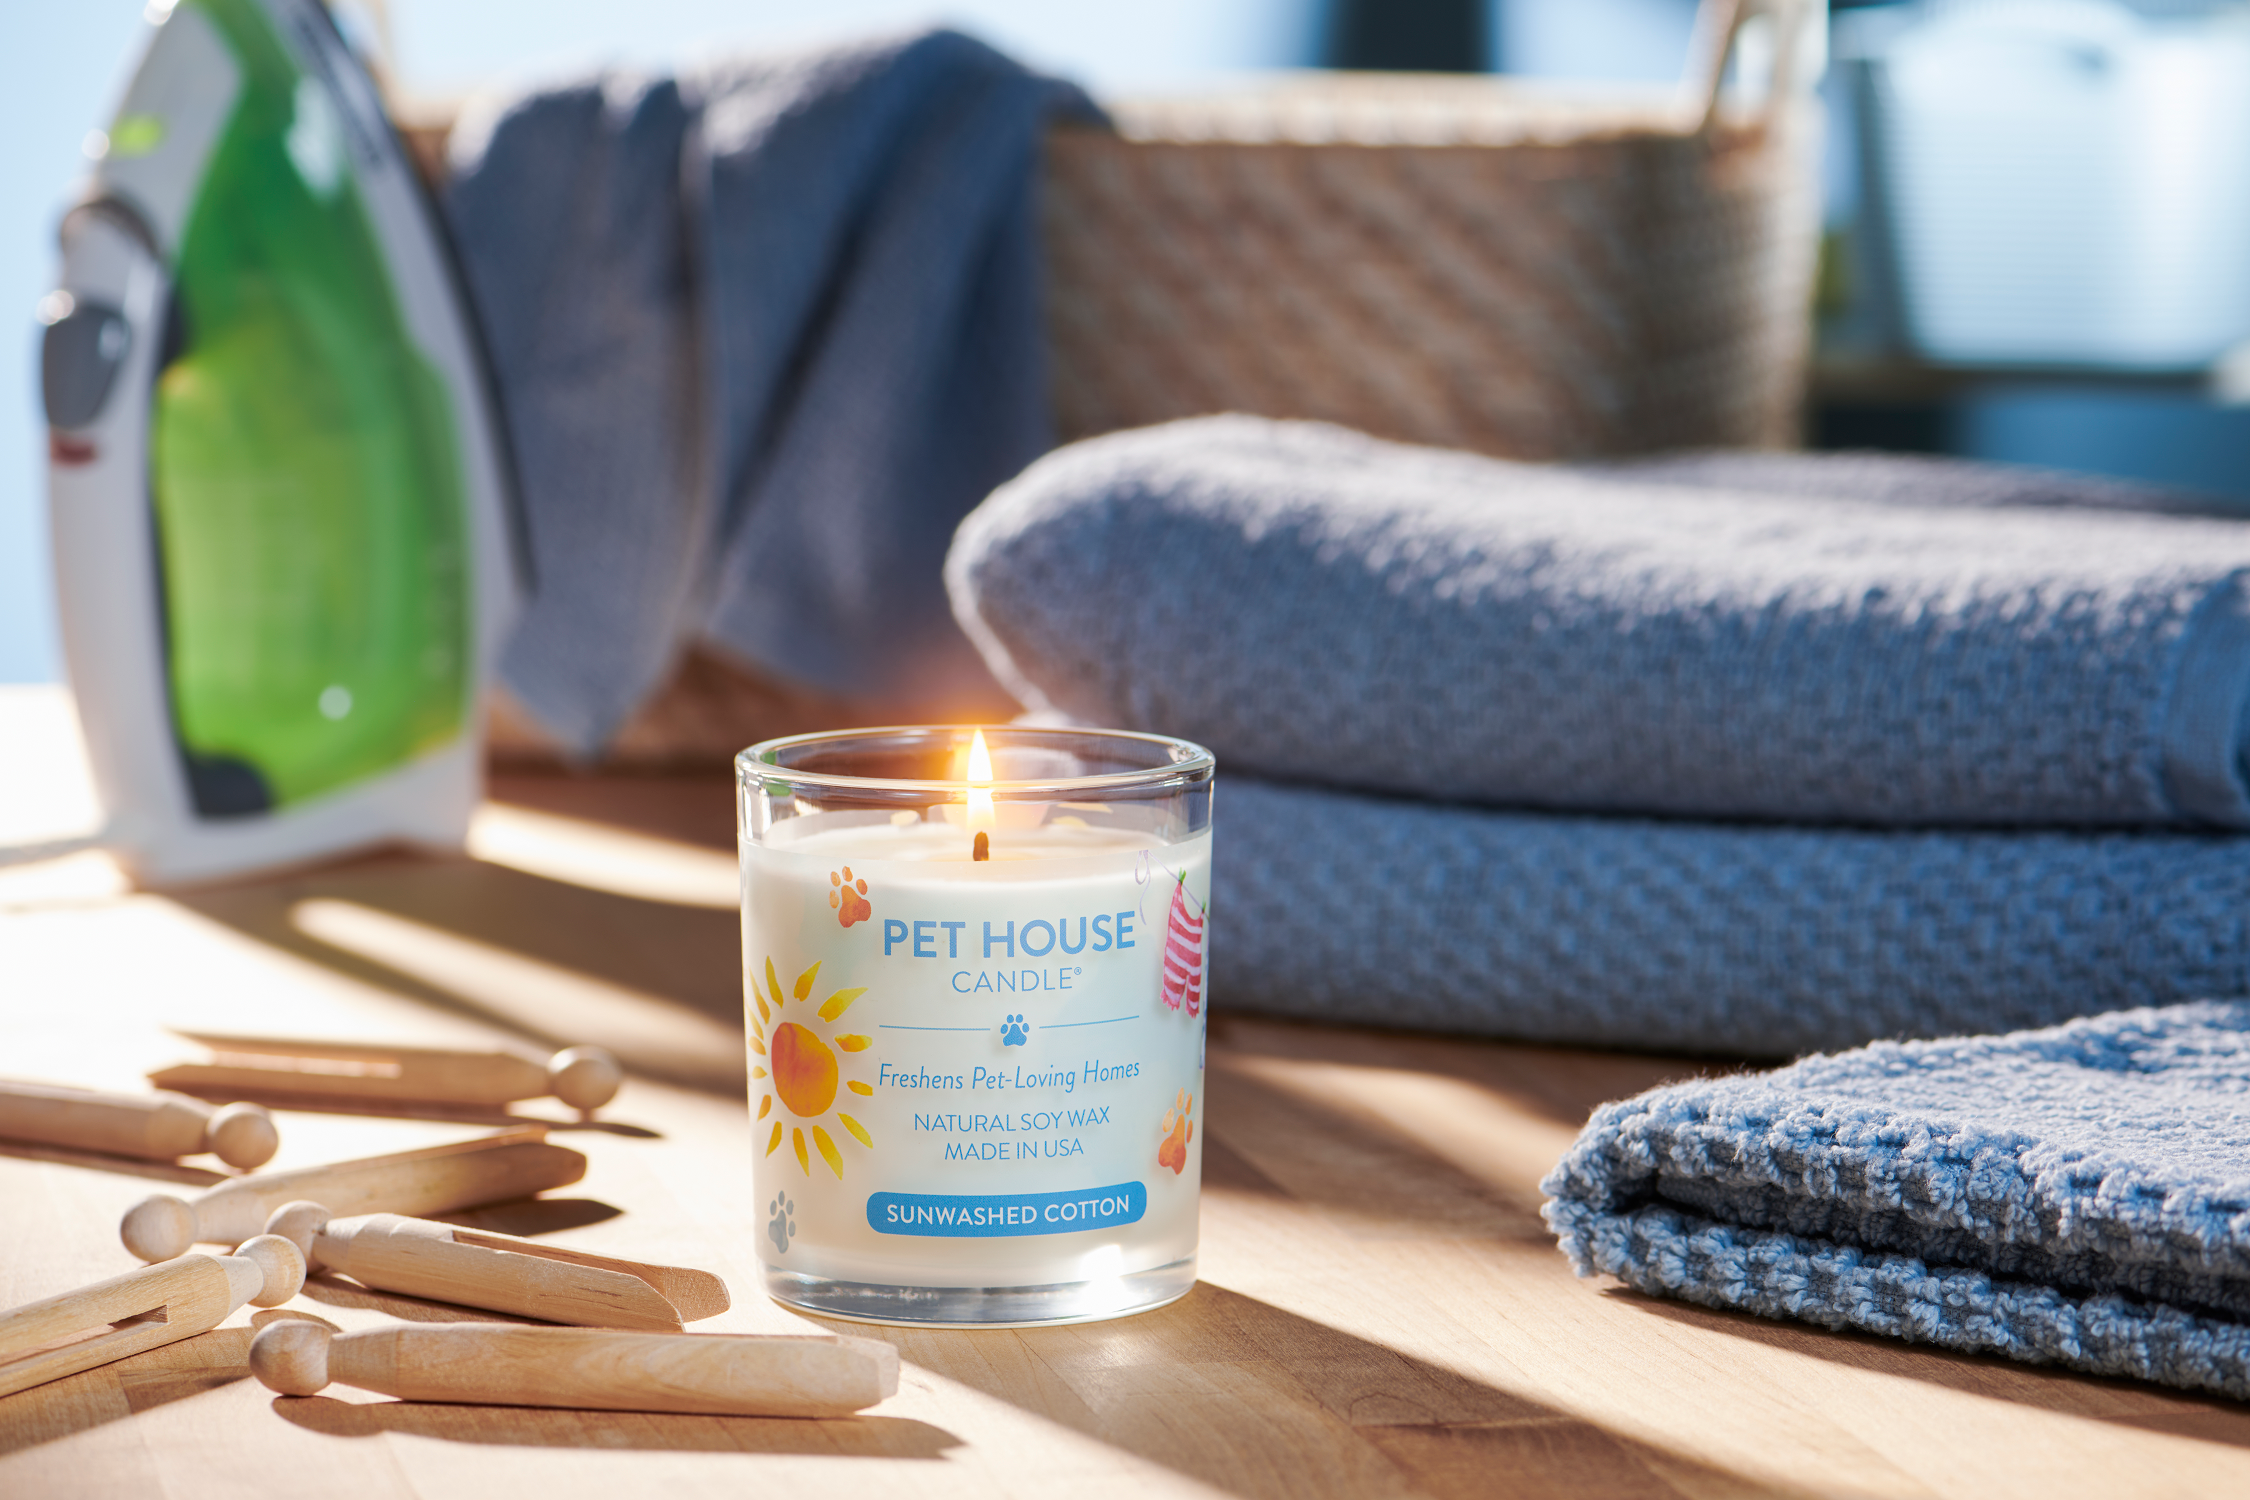 Sunwashed Cotton Pet House Candle lifestyle